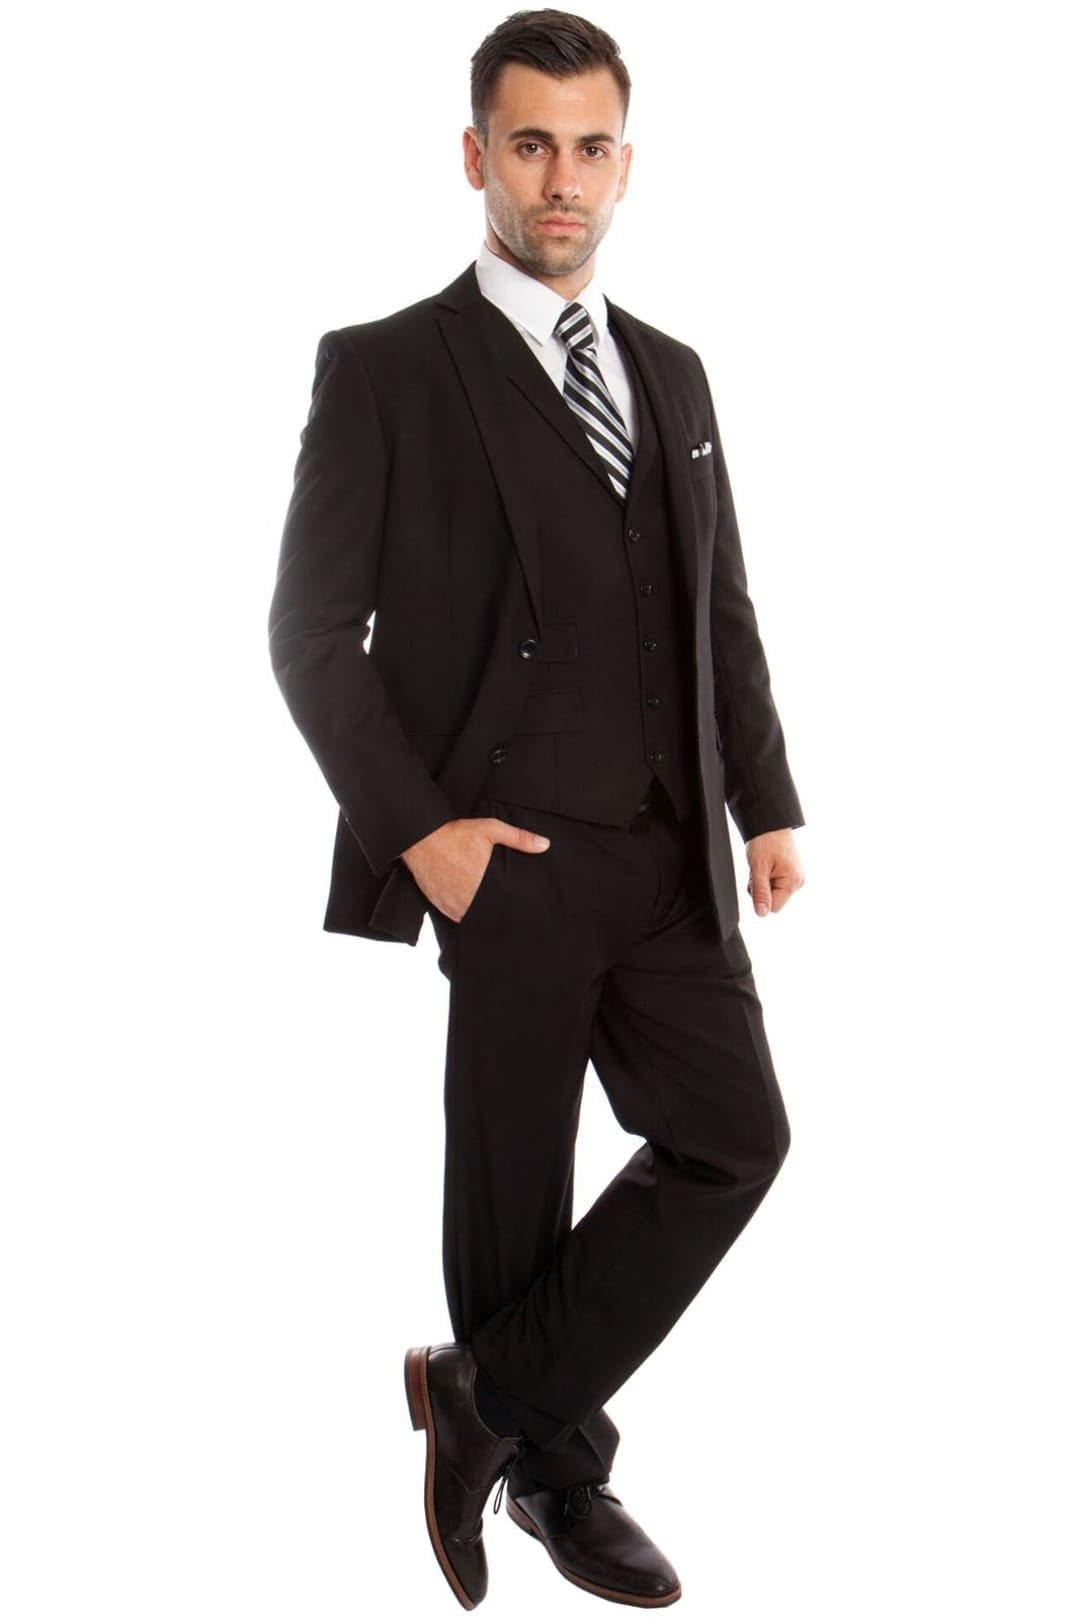 Mens Three Piece Ultra Slim Fit Solid Suit - Black 01 / US34S/W28 / EU44S/W38